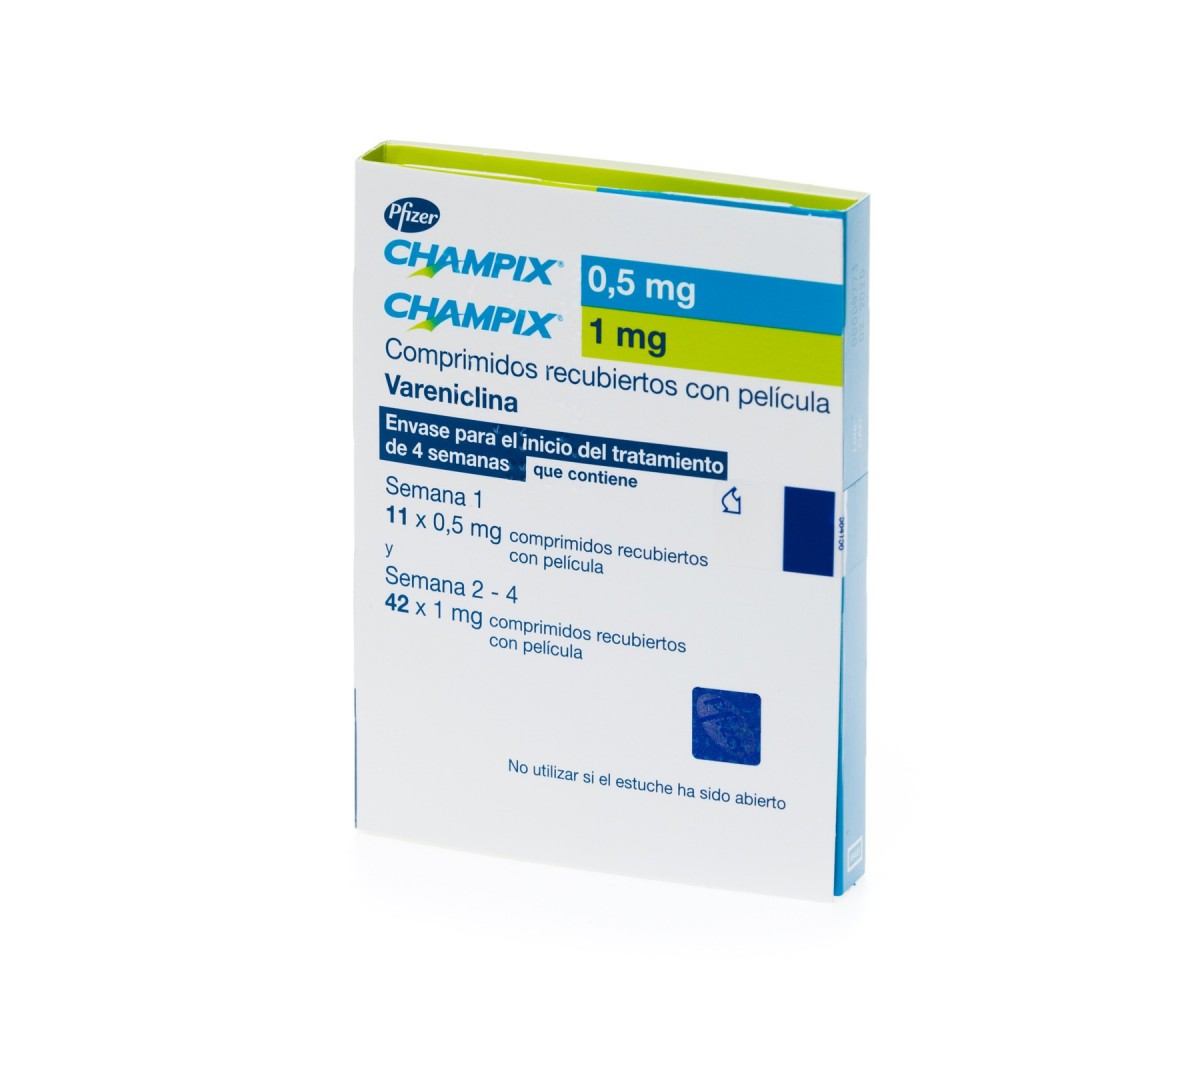 CHAMPIX 0,5 mg y 1 mg comprimidos recubiertos con pelicula 11x 0,5 mg + 14 x 1 mg + 28 x 1 mg fotografía del envase.